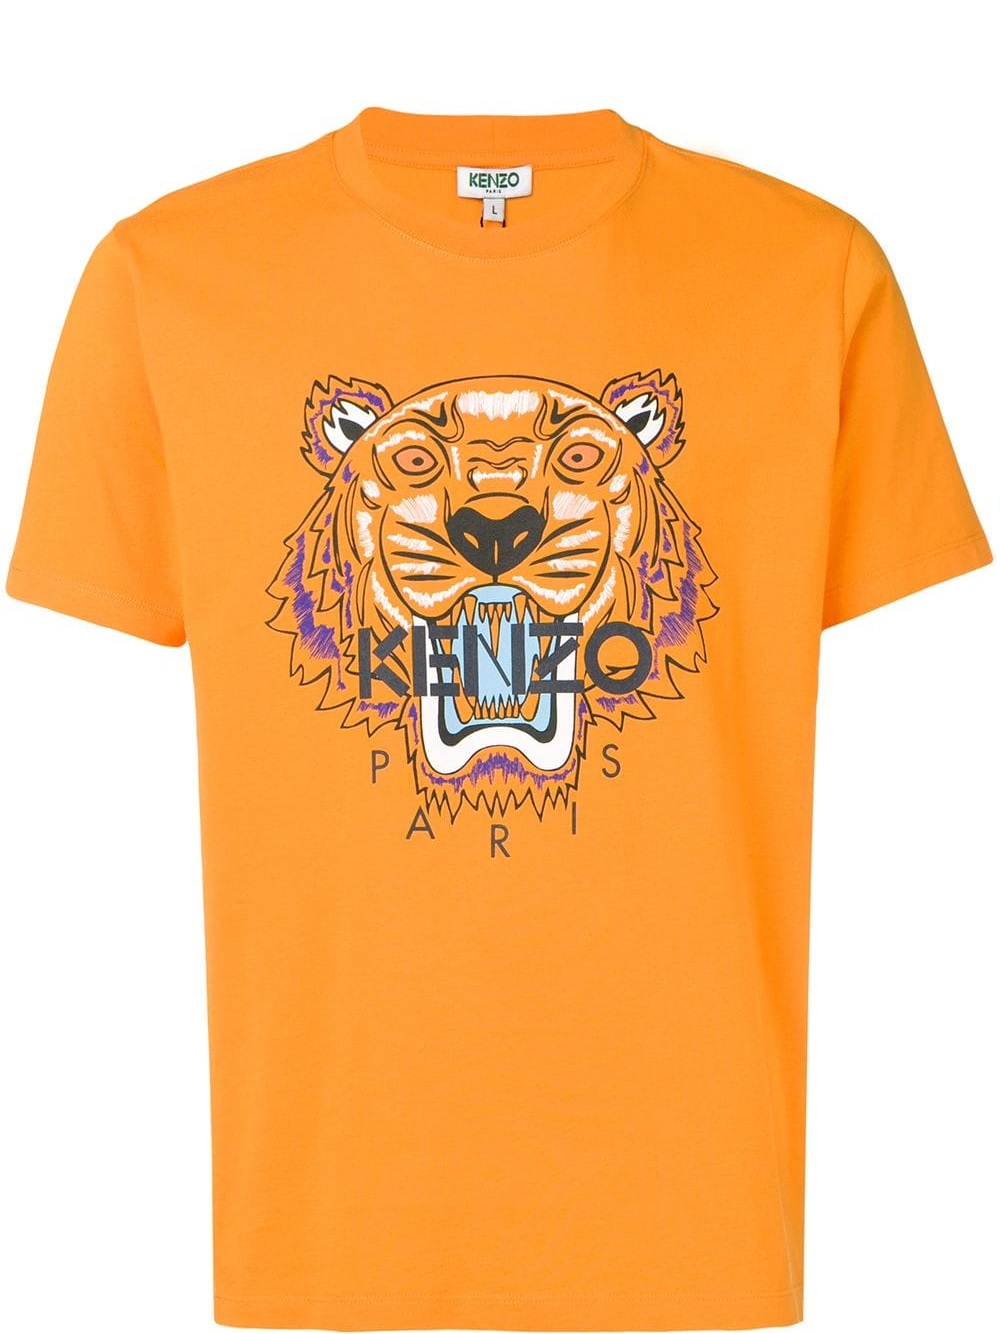 Kenzo Tiger T-shirt (Medium Orange 